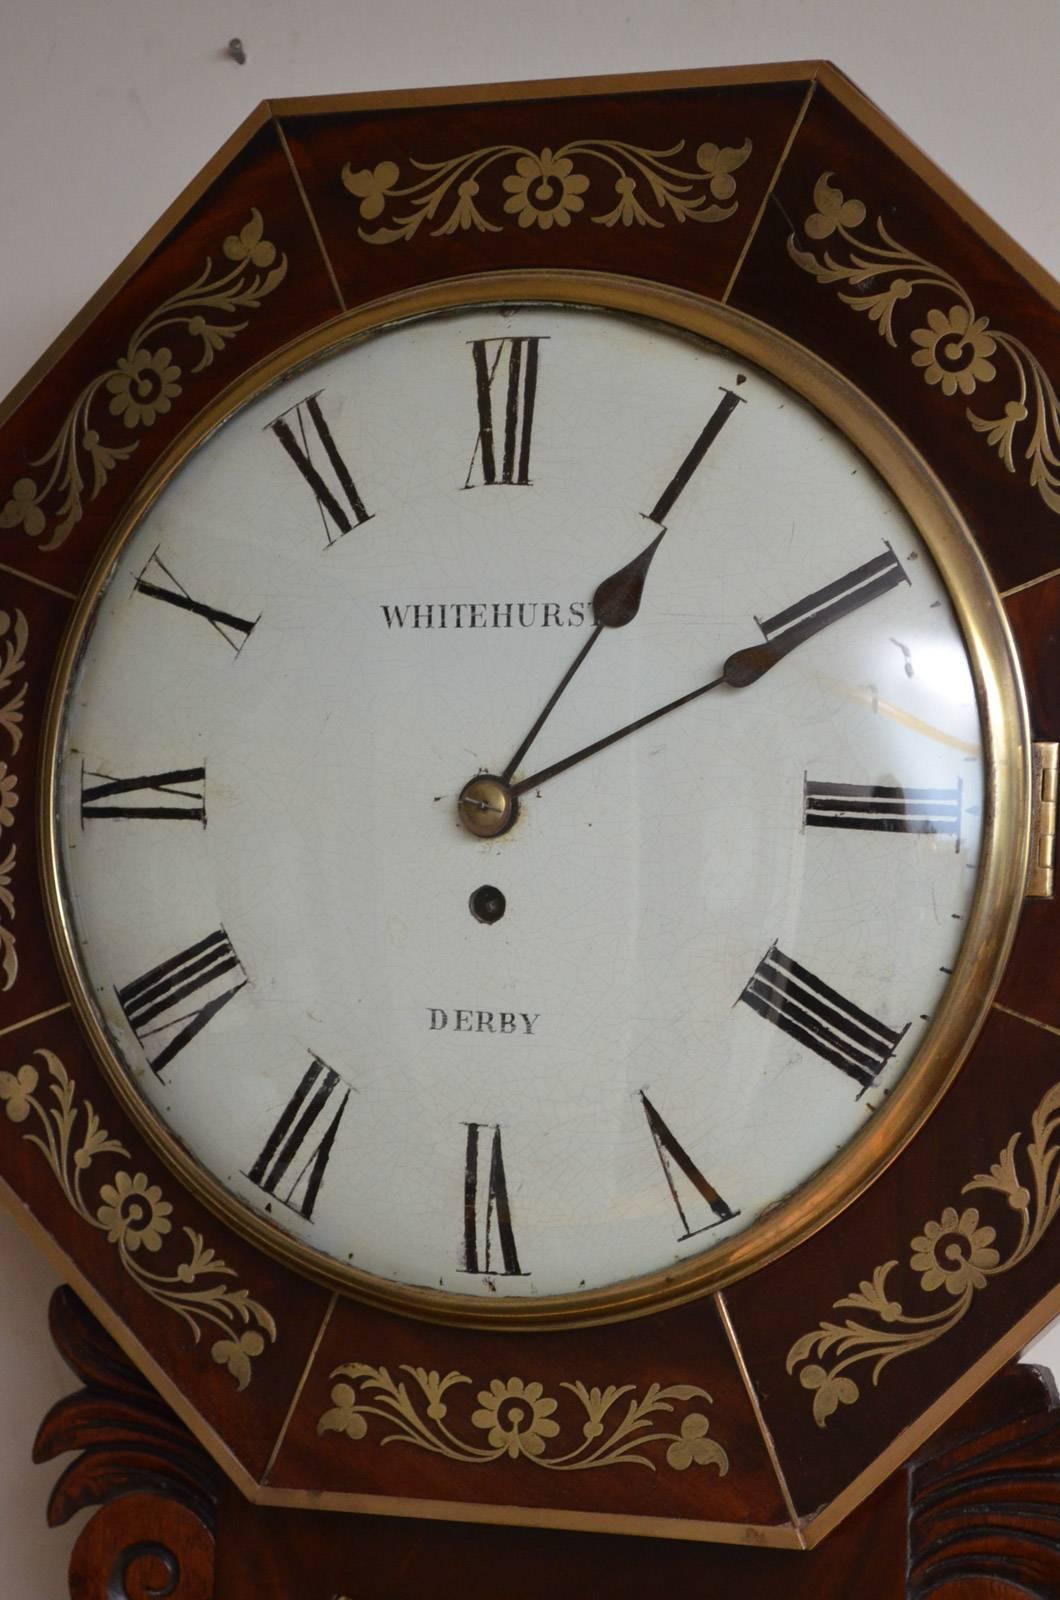 Sn3122, horloge murale de qualité, de style Régence, en acajou, par Whitehurst de Derby, avec cadran peint d'origine avec chiffres romains, aiguilles d'origine et verre convexe avec lunette en laiton, dans un boîtier octogonal, en acajou, incrusté